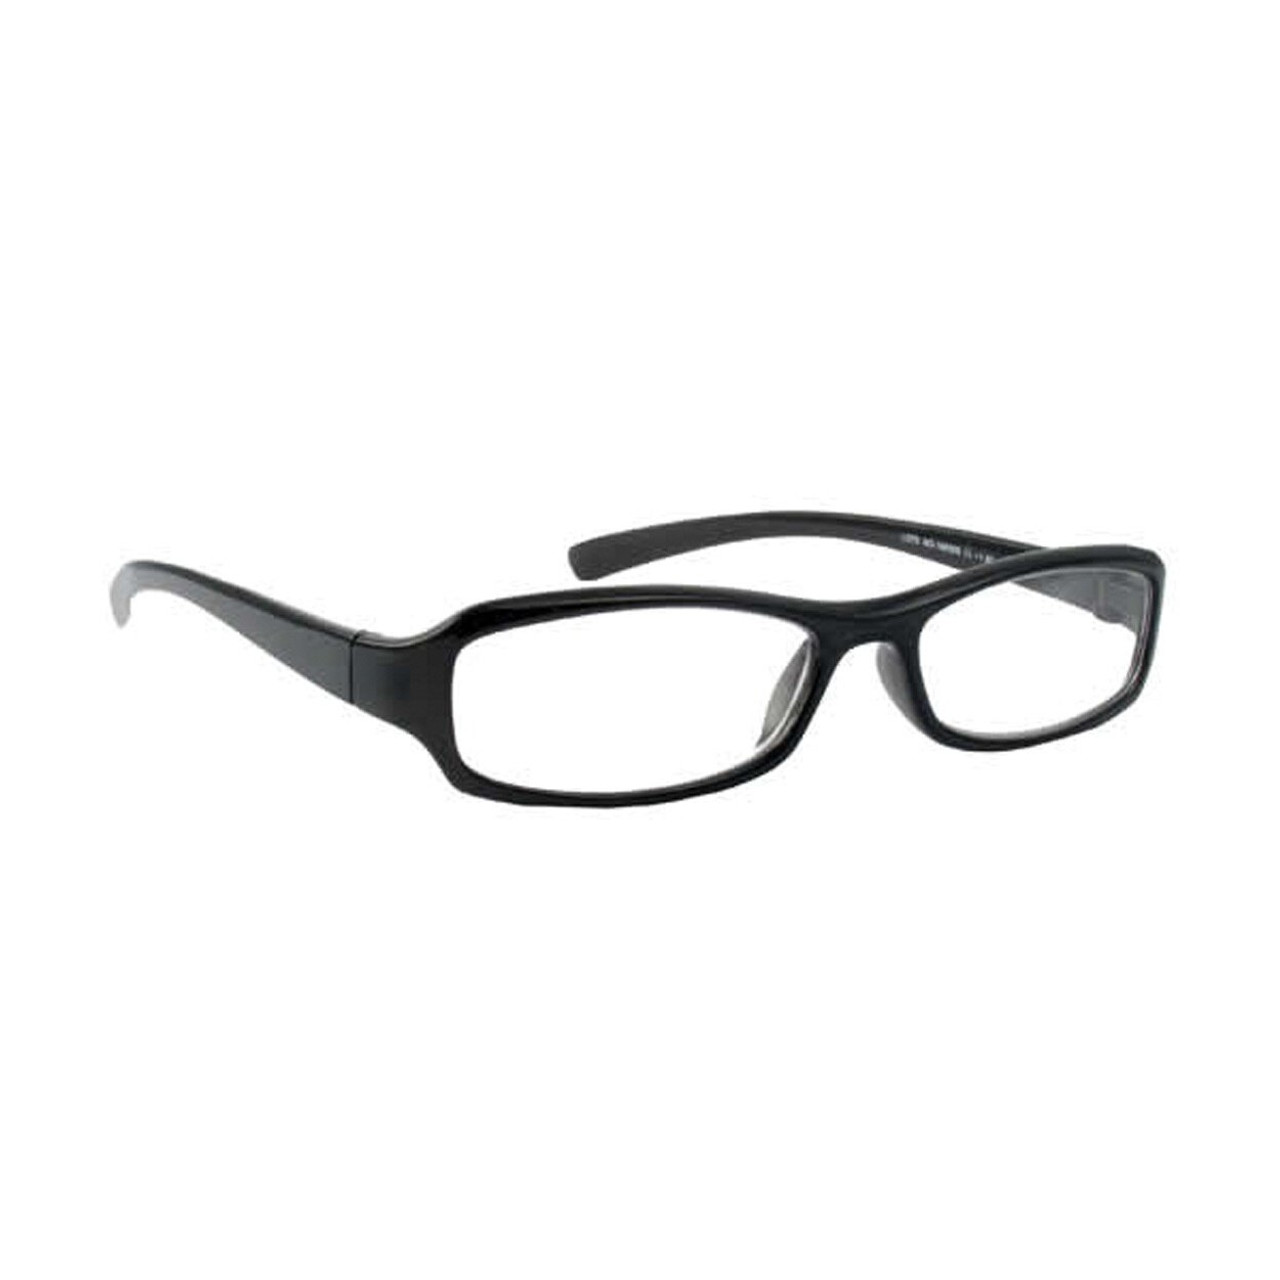 `+4.00 Deluxe Reading Glasses W/ Black Frame